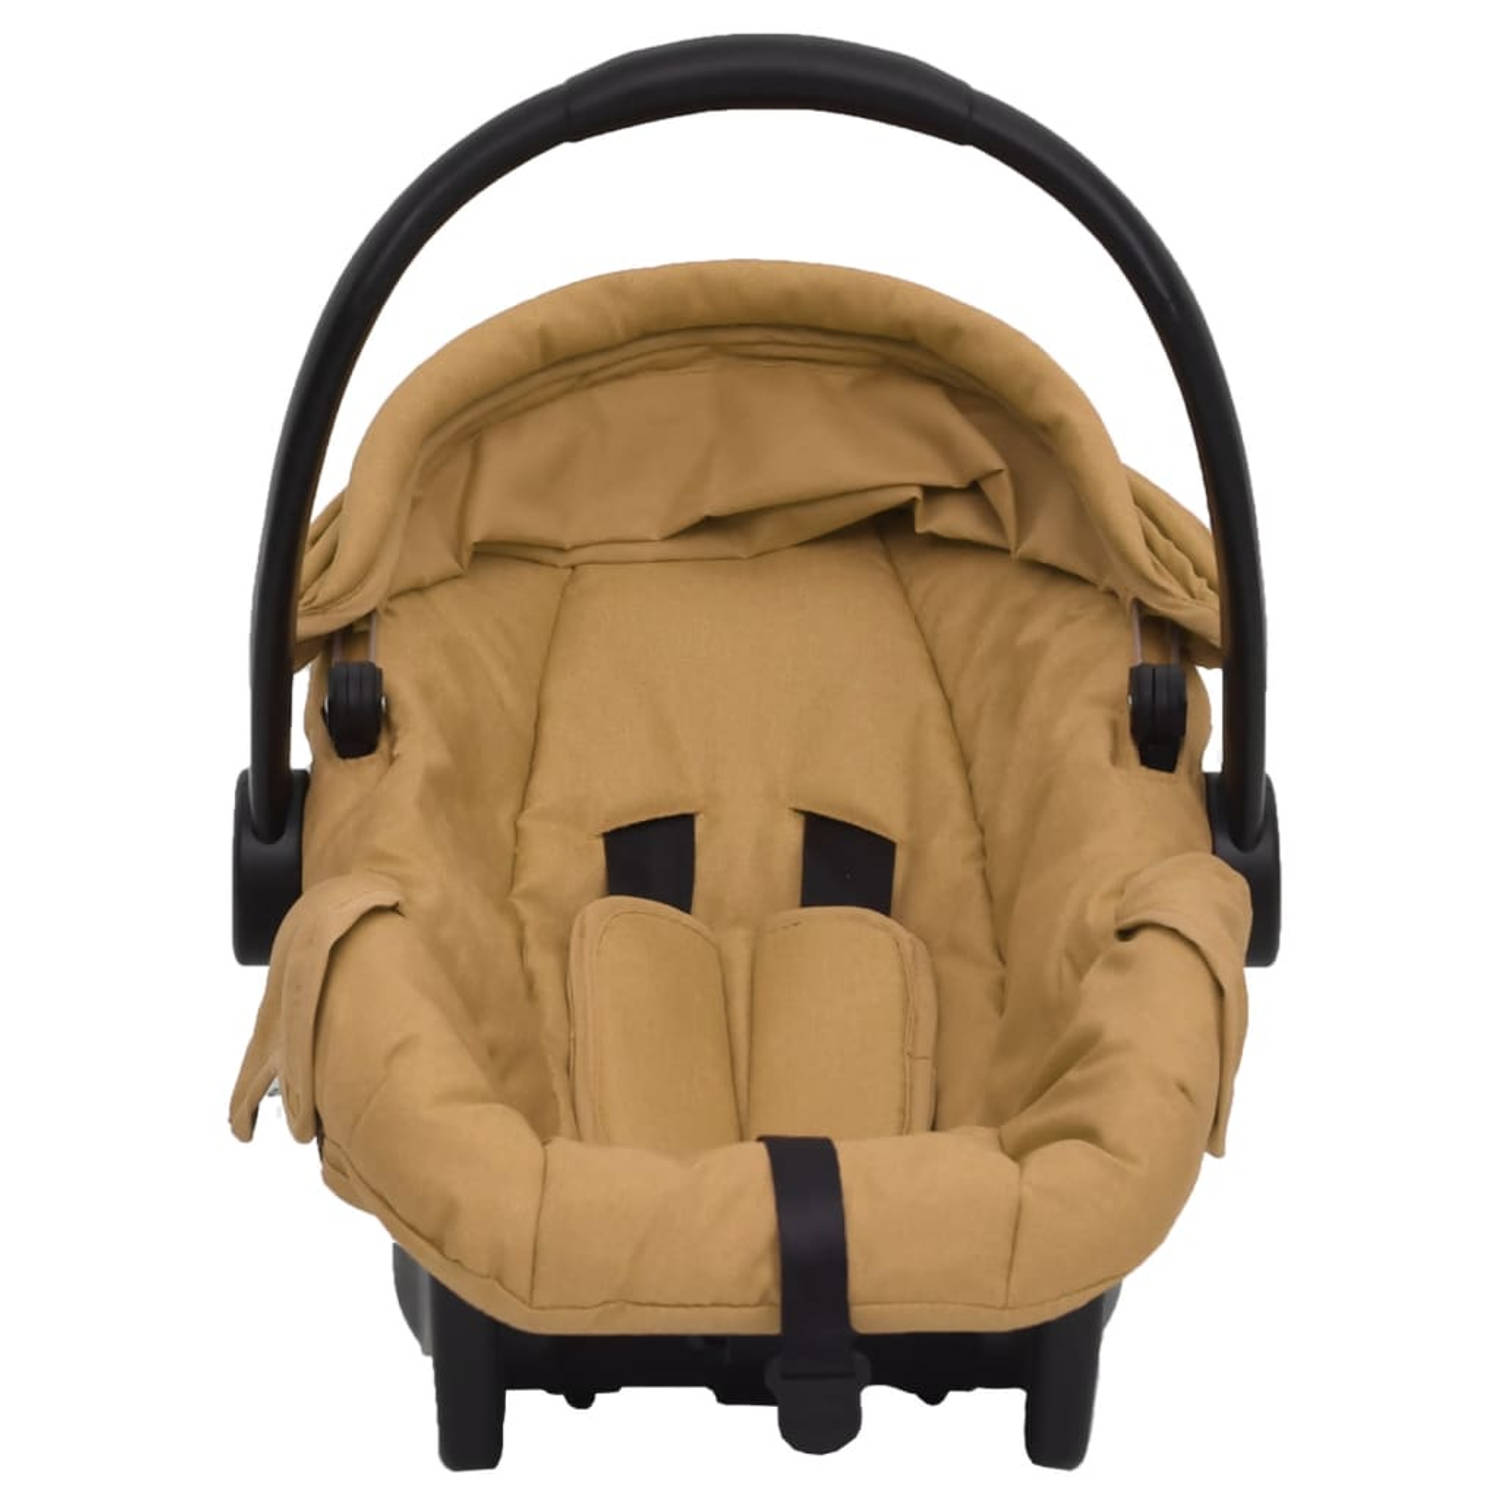 The Living Store Babyautostoel - Veiligheidszitje - Stevig en duurzaam - Gemakkelijk te dragen - Zijpanelen voor extra